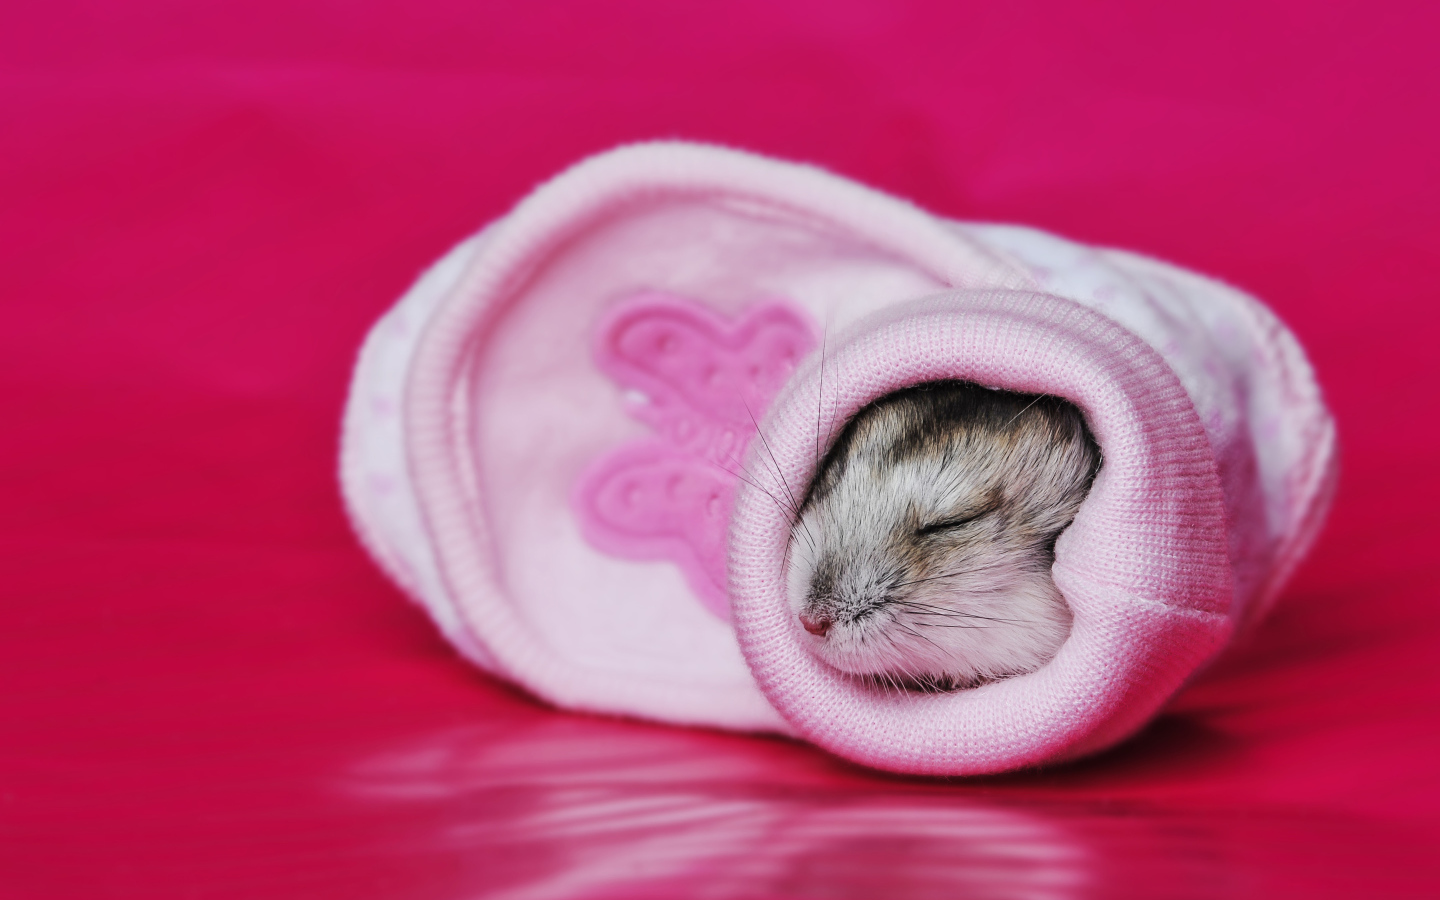 A little cute hamster is sleeping in a pink sock